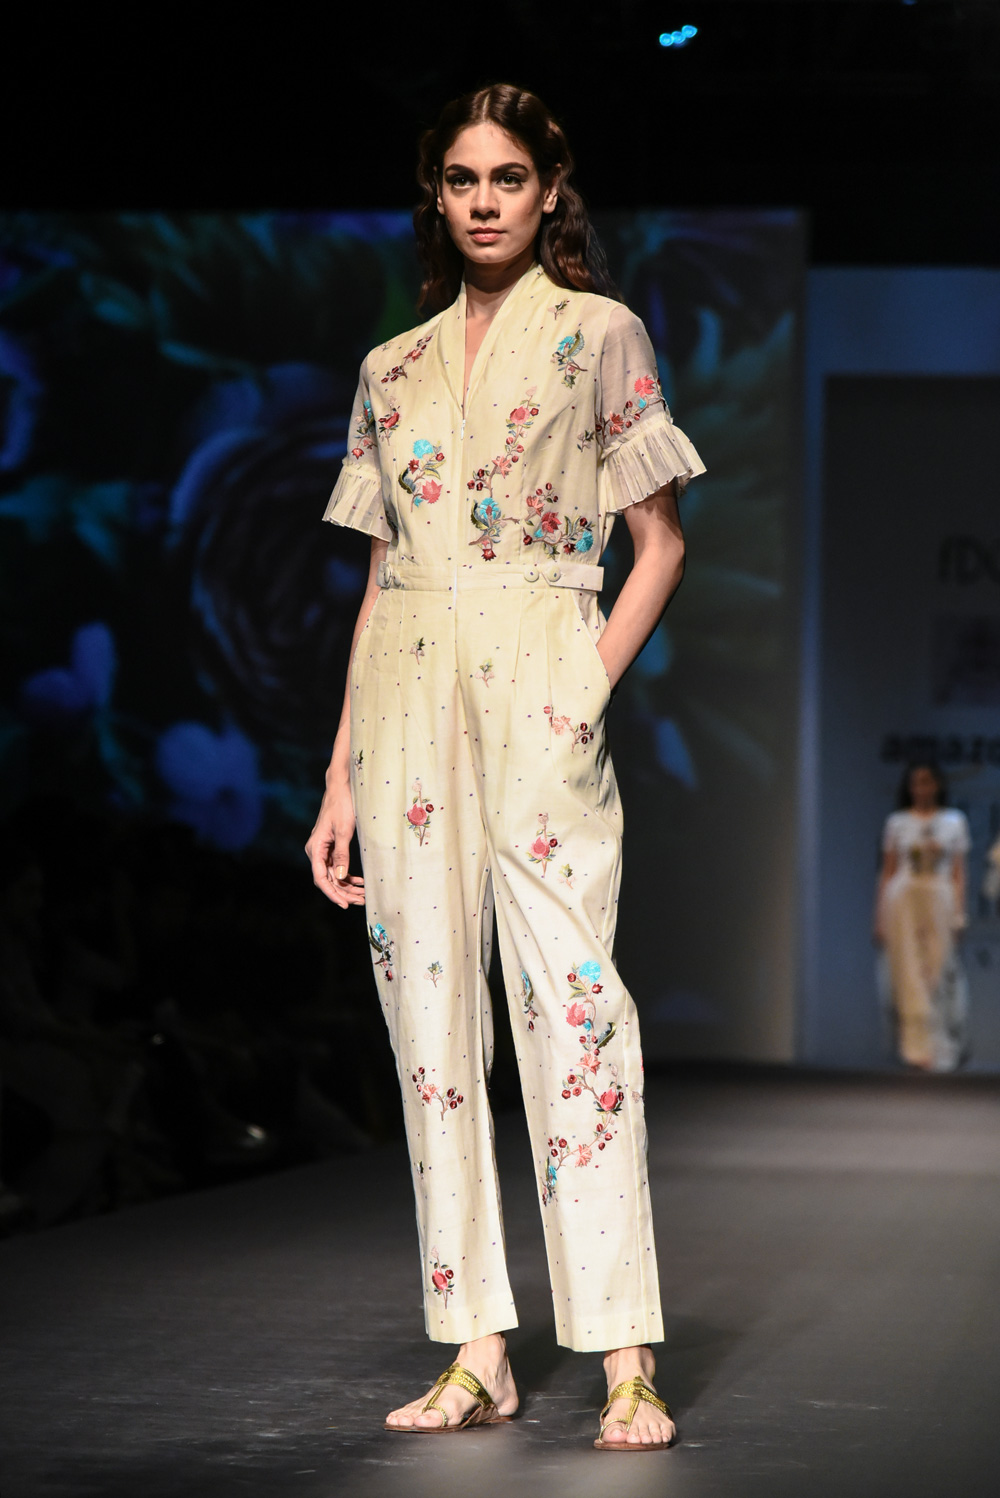 Pramaa by Pratimaa FDCI Amazon India Fashion Week Spring Summer 2018 Look 13